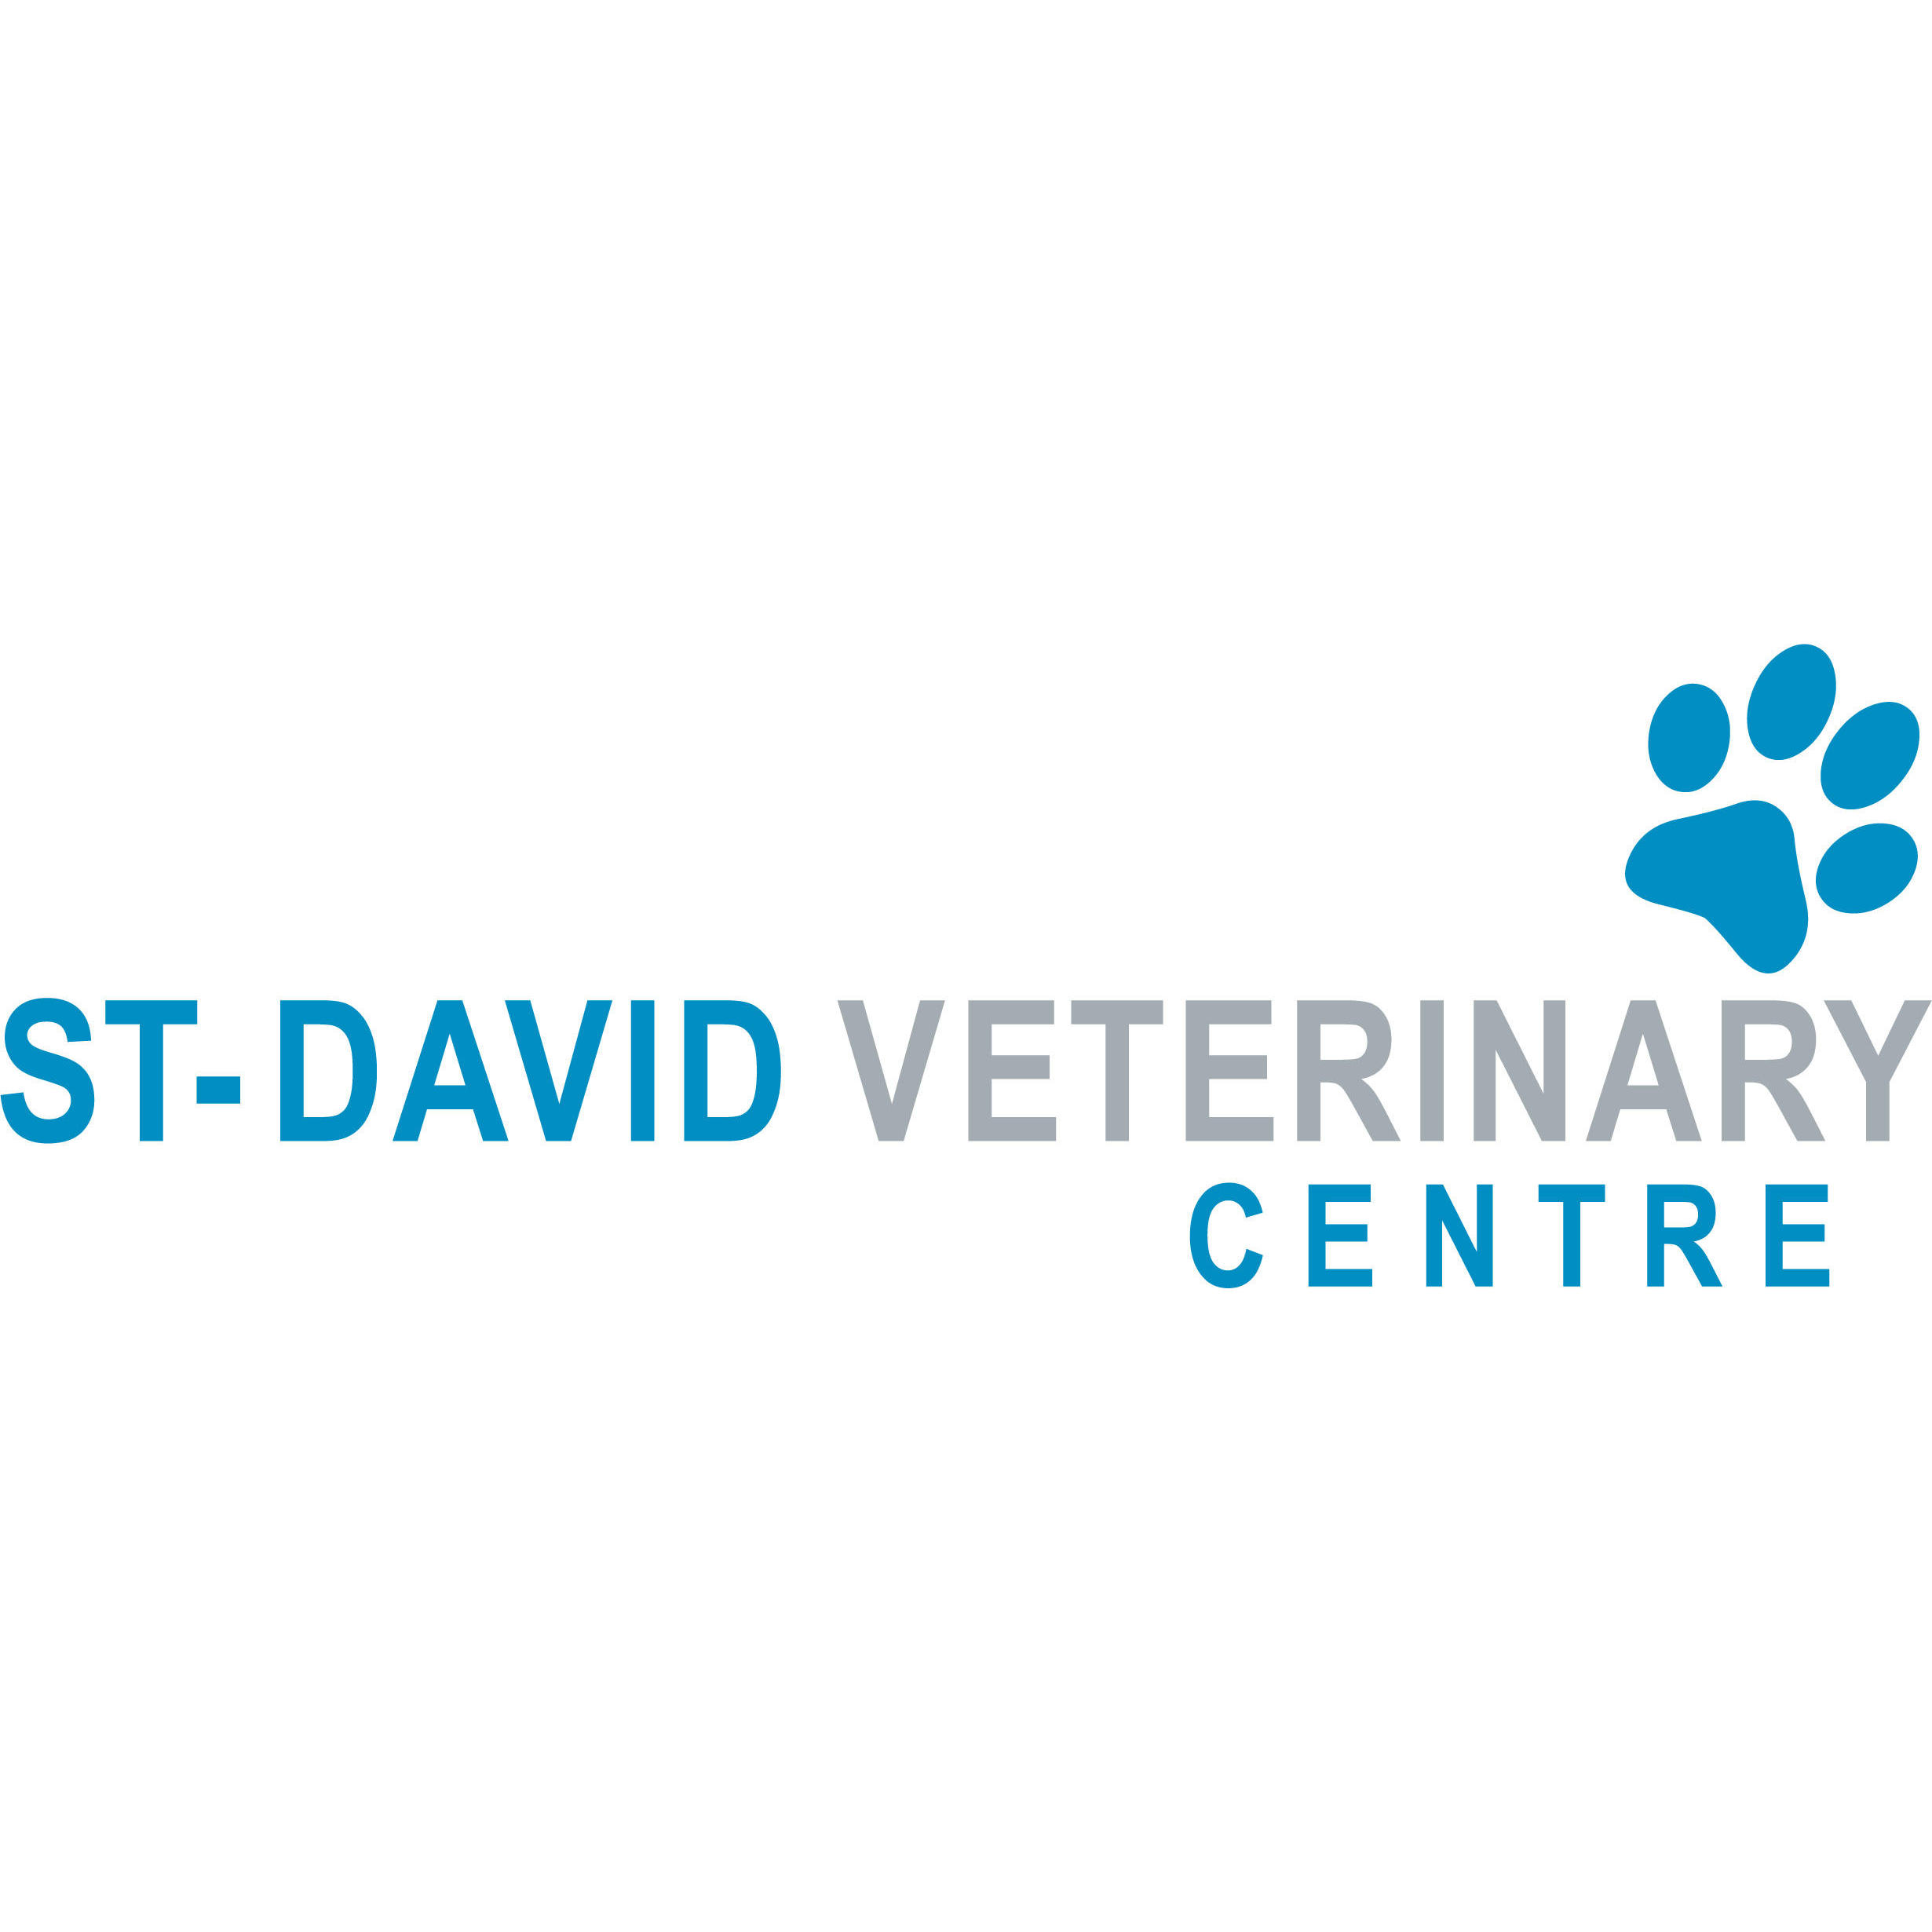 St. David Veterinary Centre, Llanishen Logo